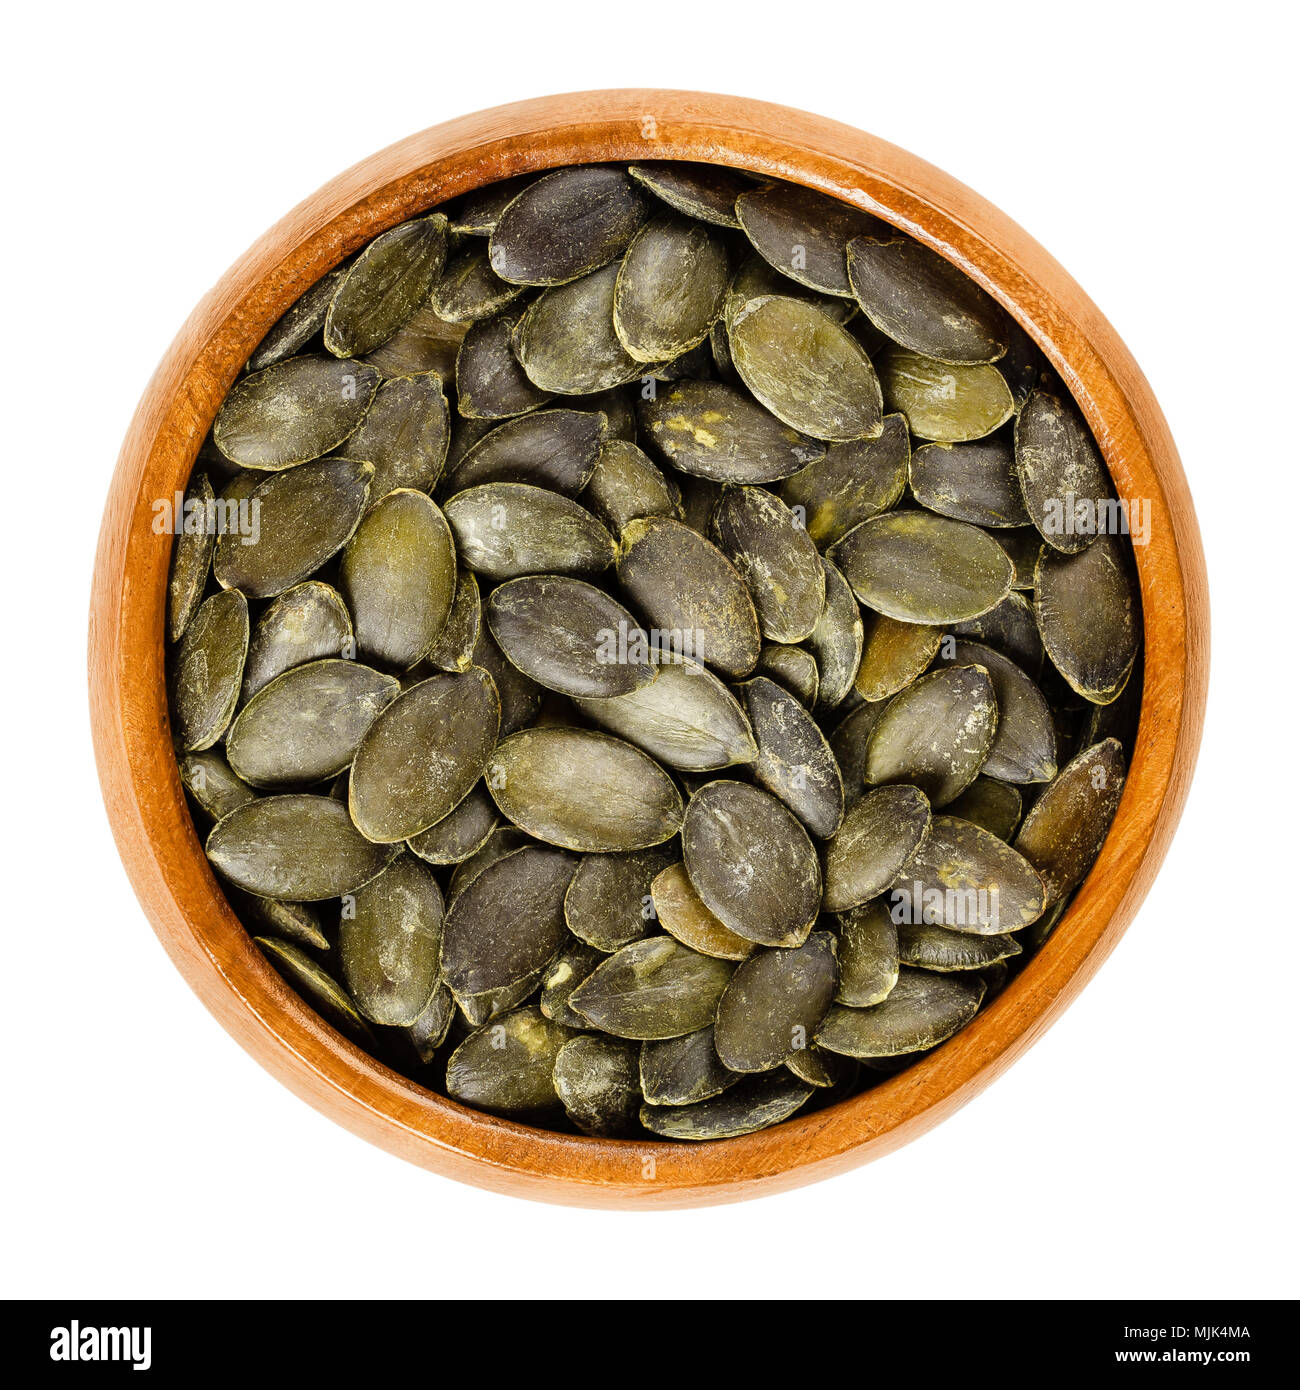 Geröstet und gesalzen pepita Kürbiskerne in Houten, als Snack verwendet. Flache grüne genießbare Sommer Squash Samen von Cucurbita pepo. Isolierte Makro Foto. Stockfoto